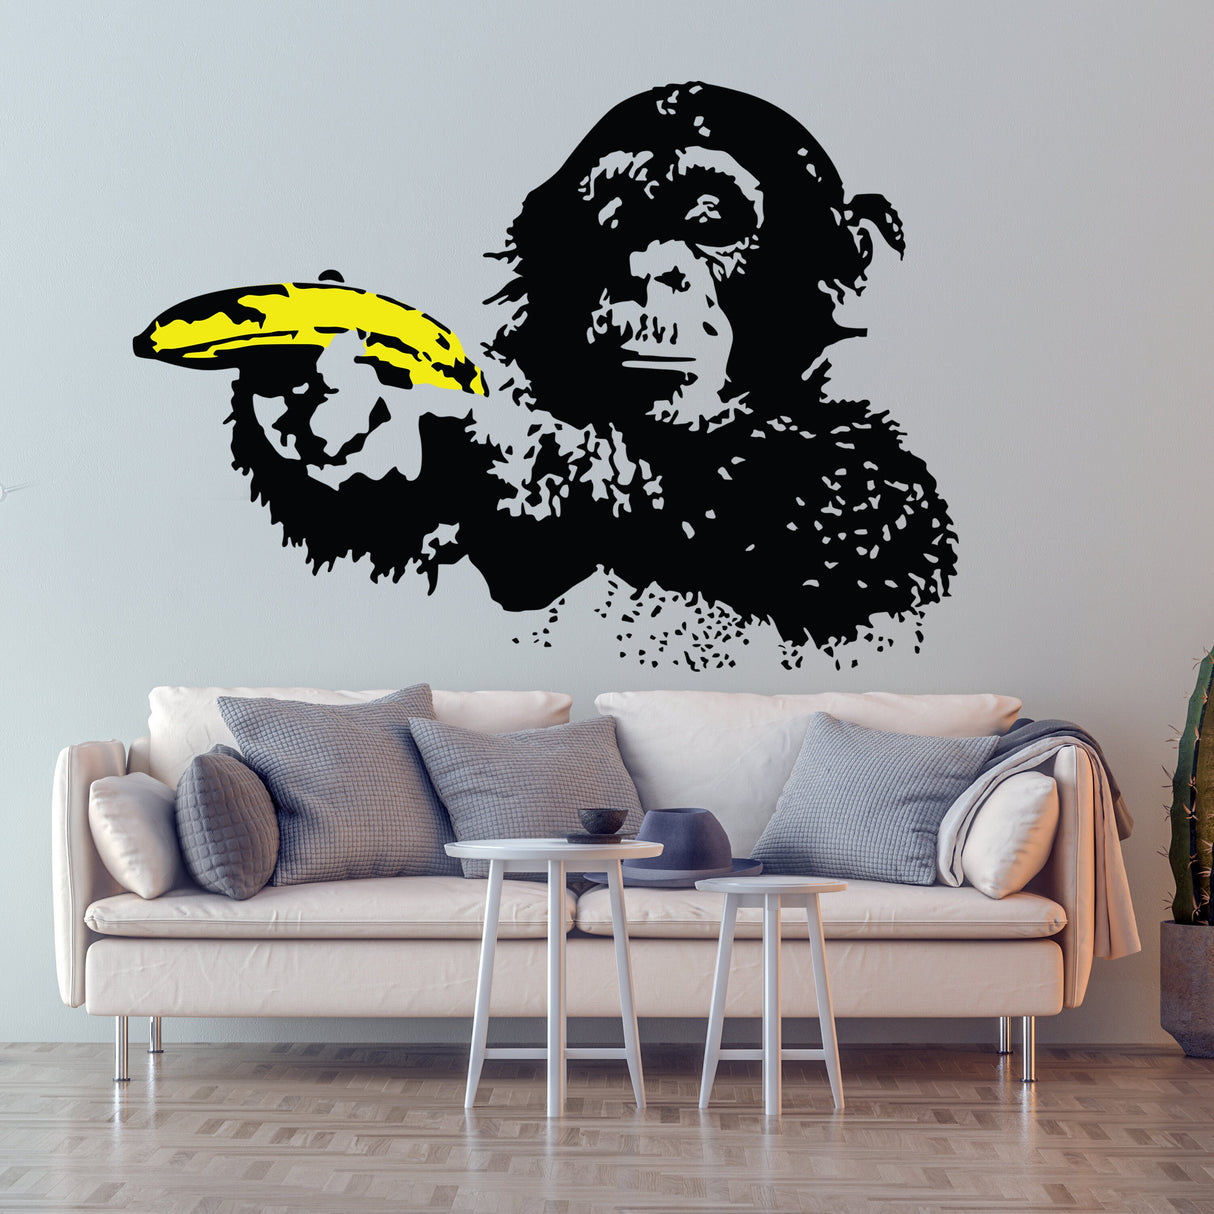 Banksy Monkey Wall Sticker - Bansky Art Vinyl Decal